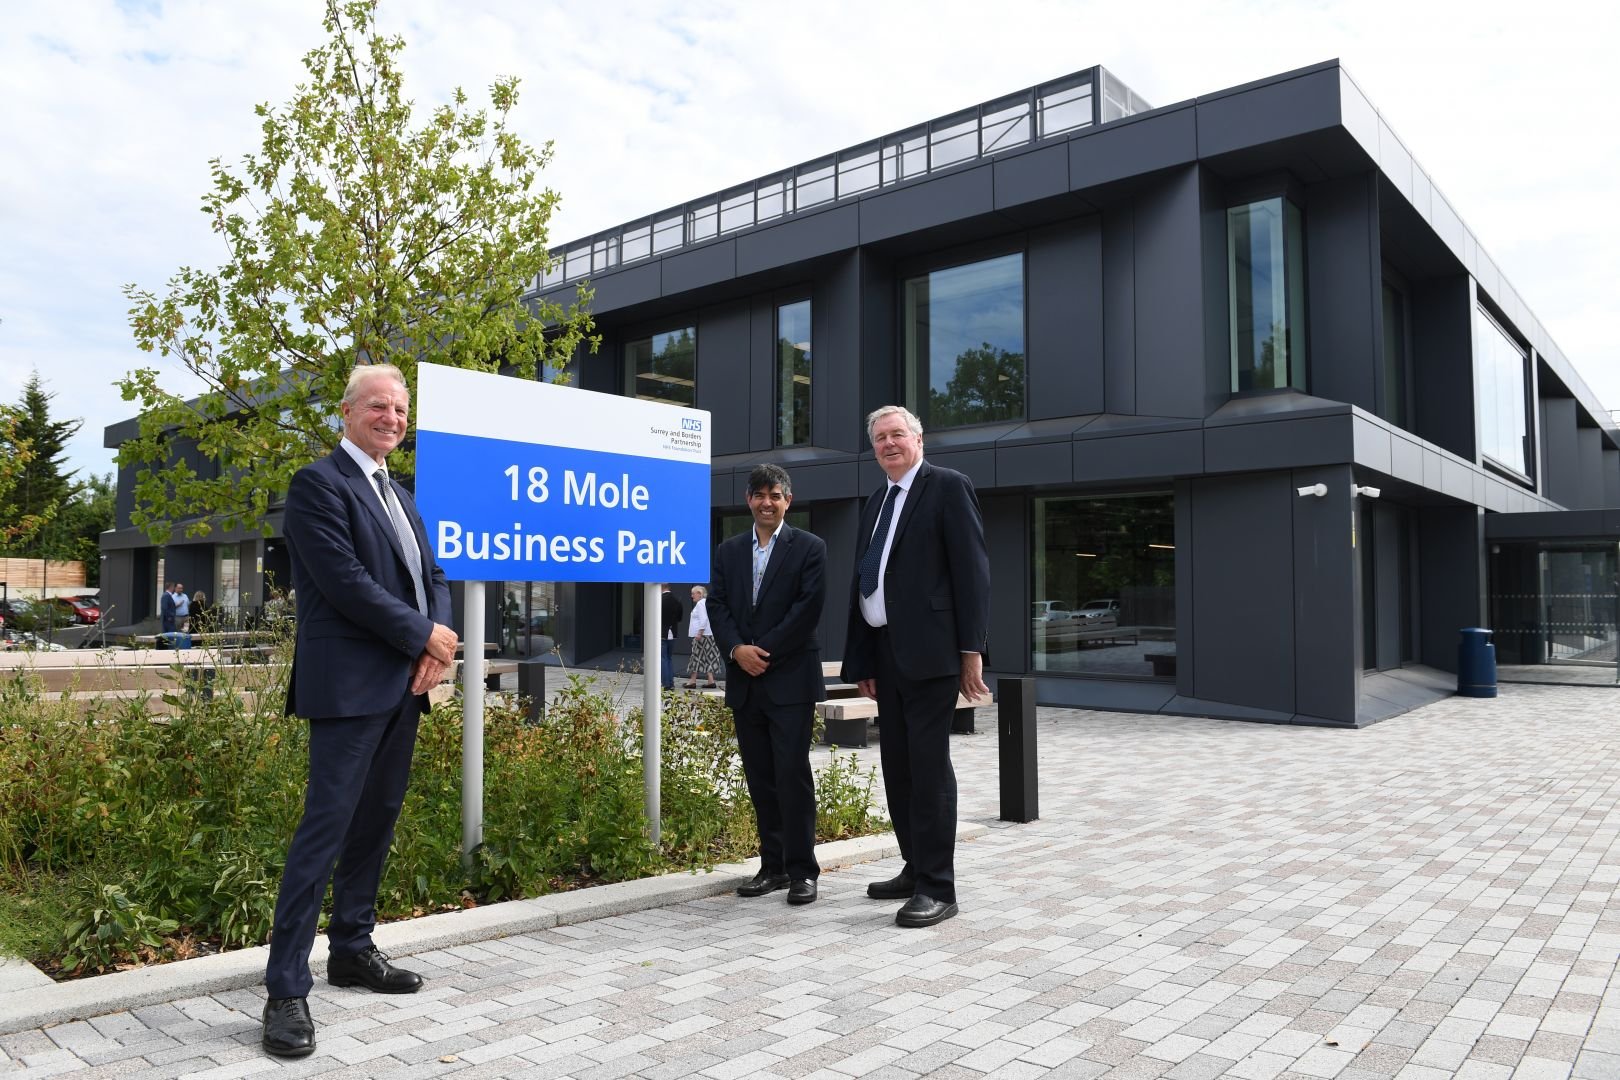 NHS 18 Mole Business Park opens JAR_5996.jpg